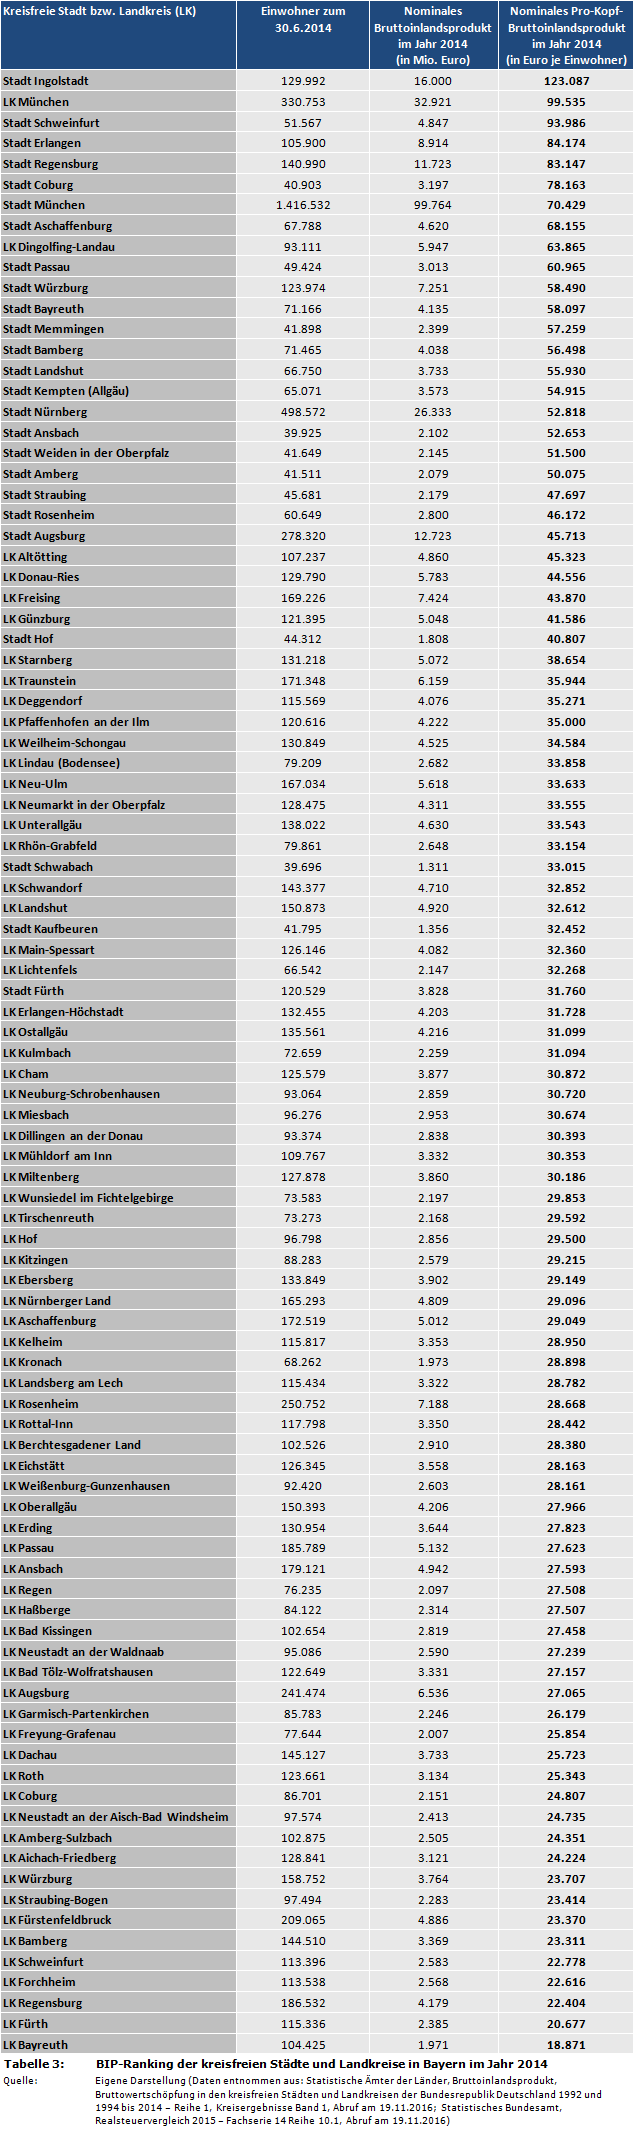 Pro-Kopf-Bruttoinlandsprodukt: BIP-Ranking der kreisfreien Städte und Landkreise in Bayern im Jahr 2014